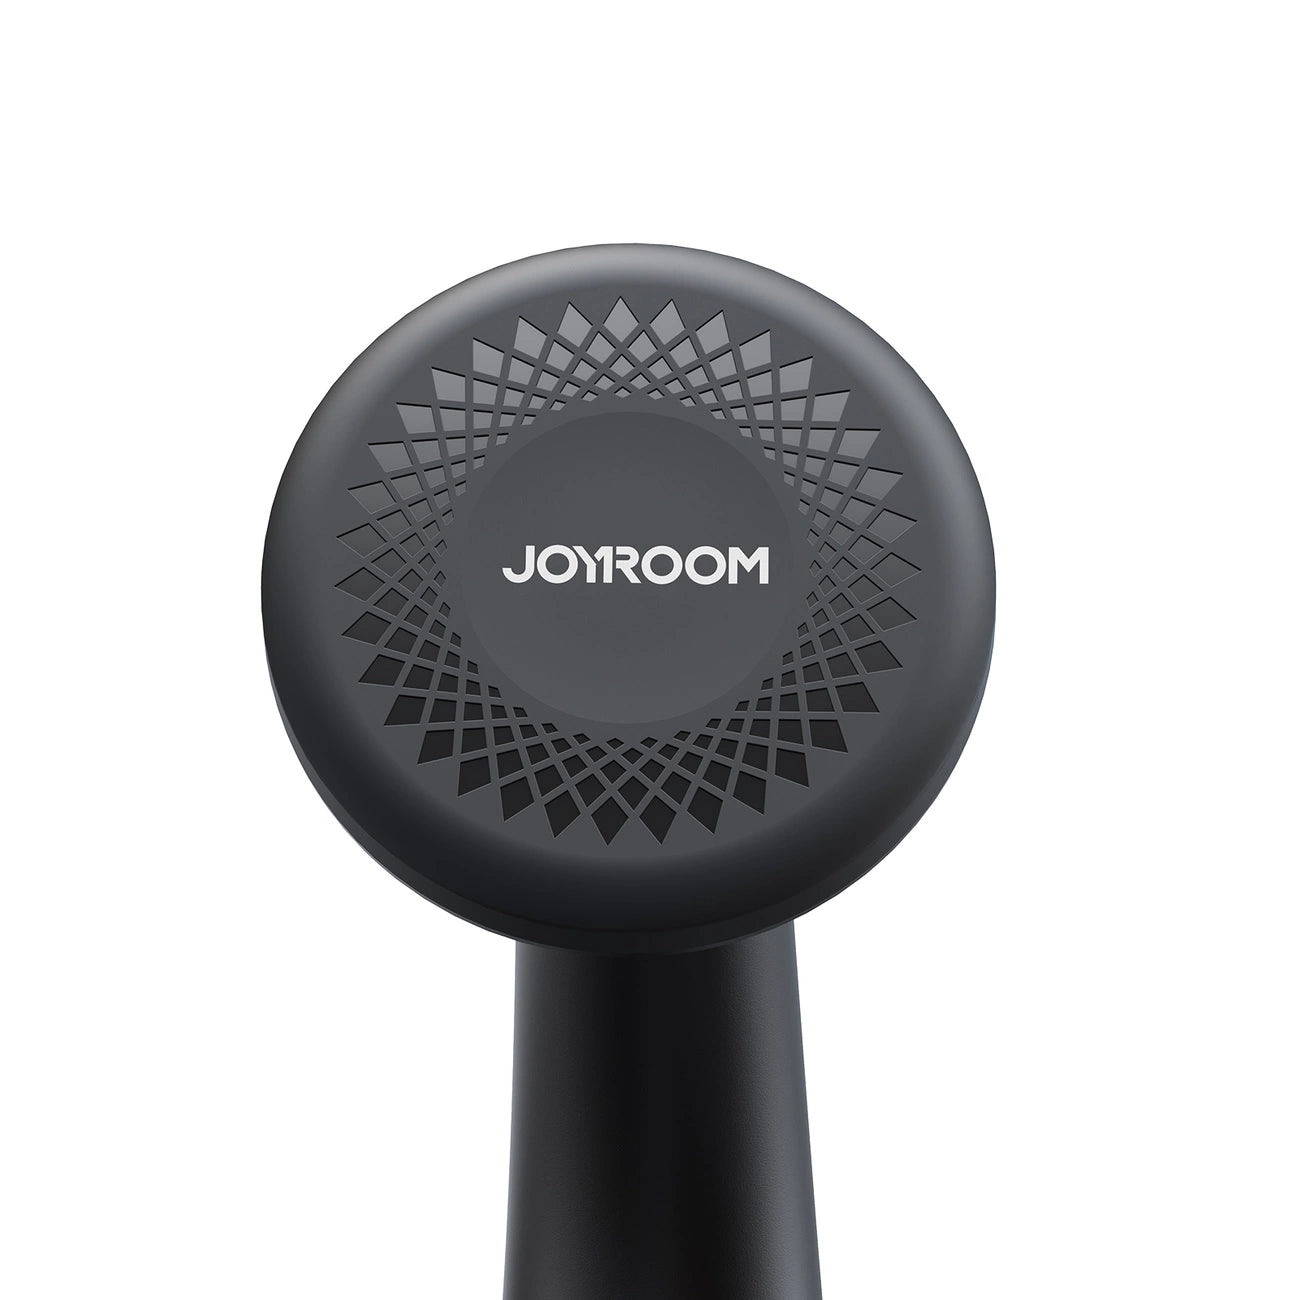 Joyroom JR-ZS356 Magnetic Car Phone Mount (Windshield) - Black